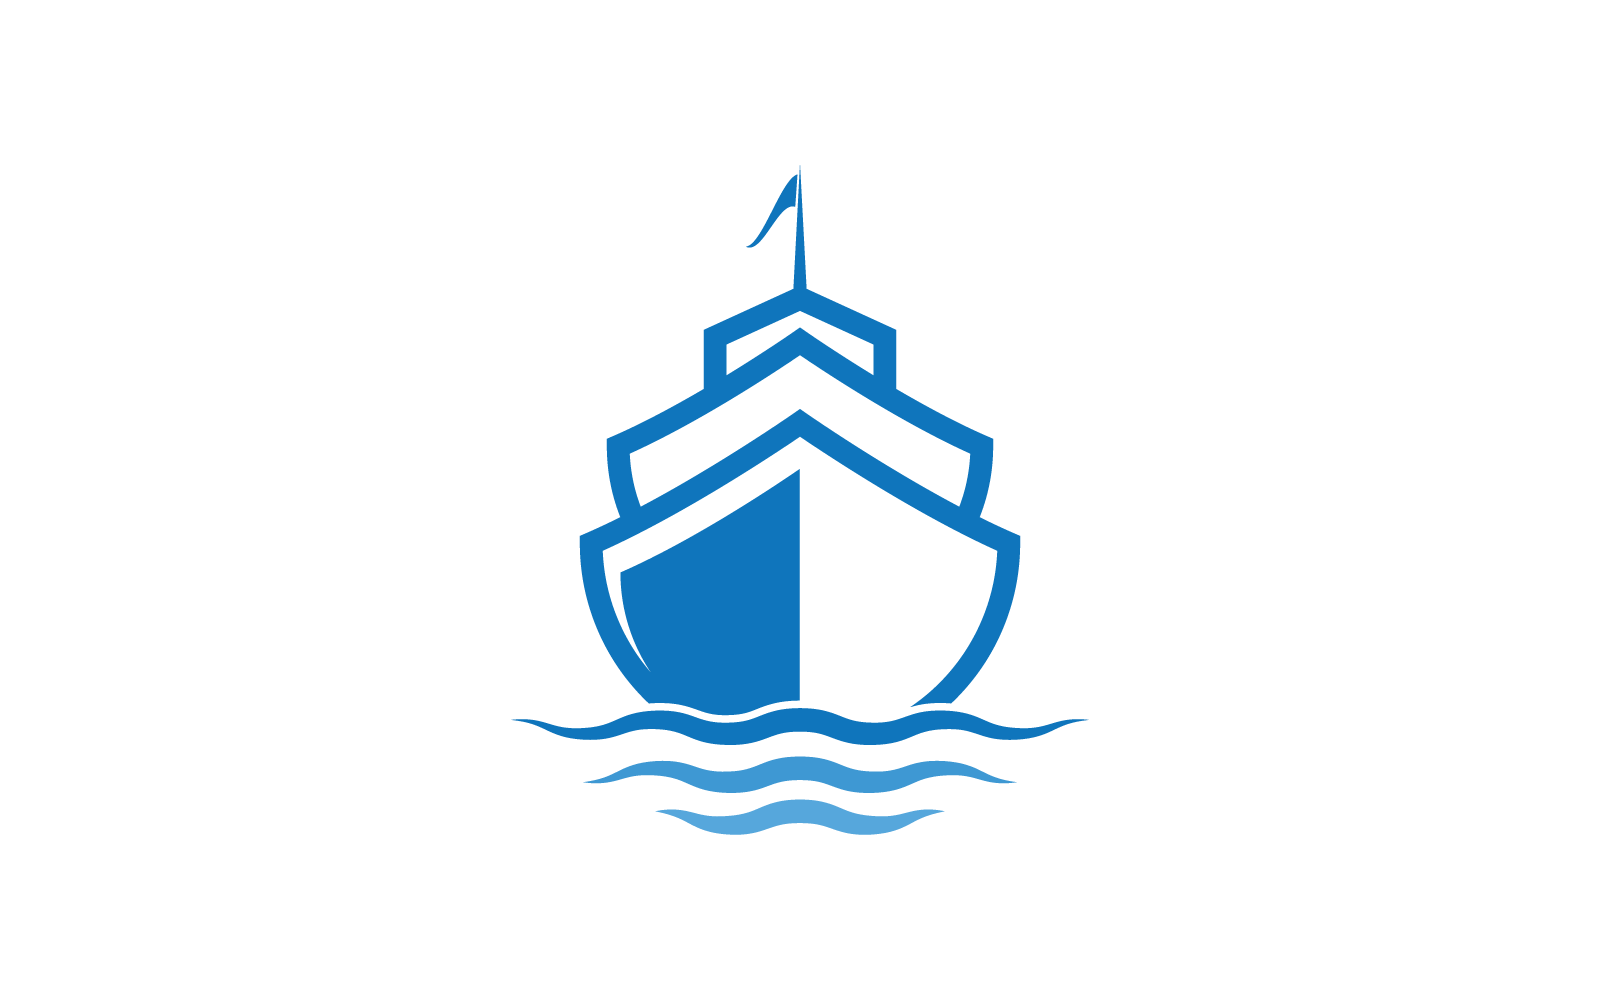 Cruise ship Logo Template vector icon flat design